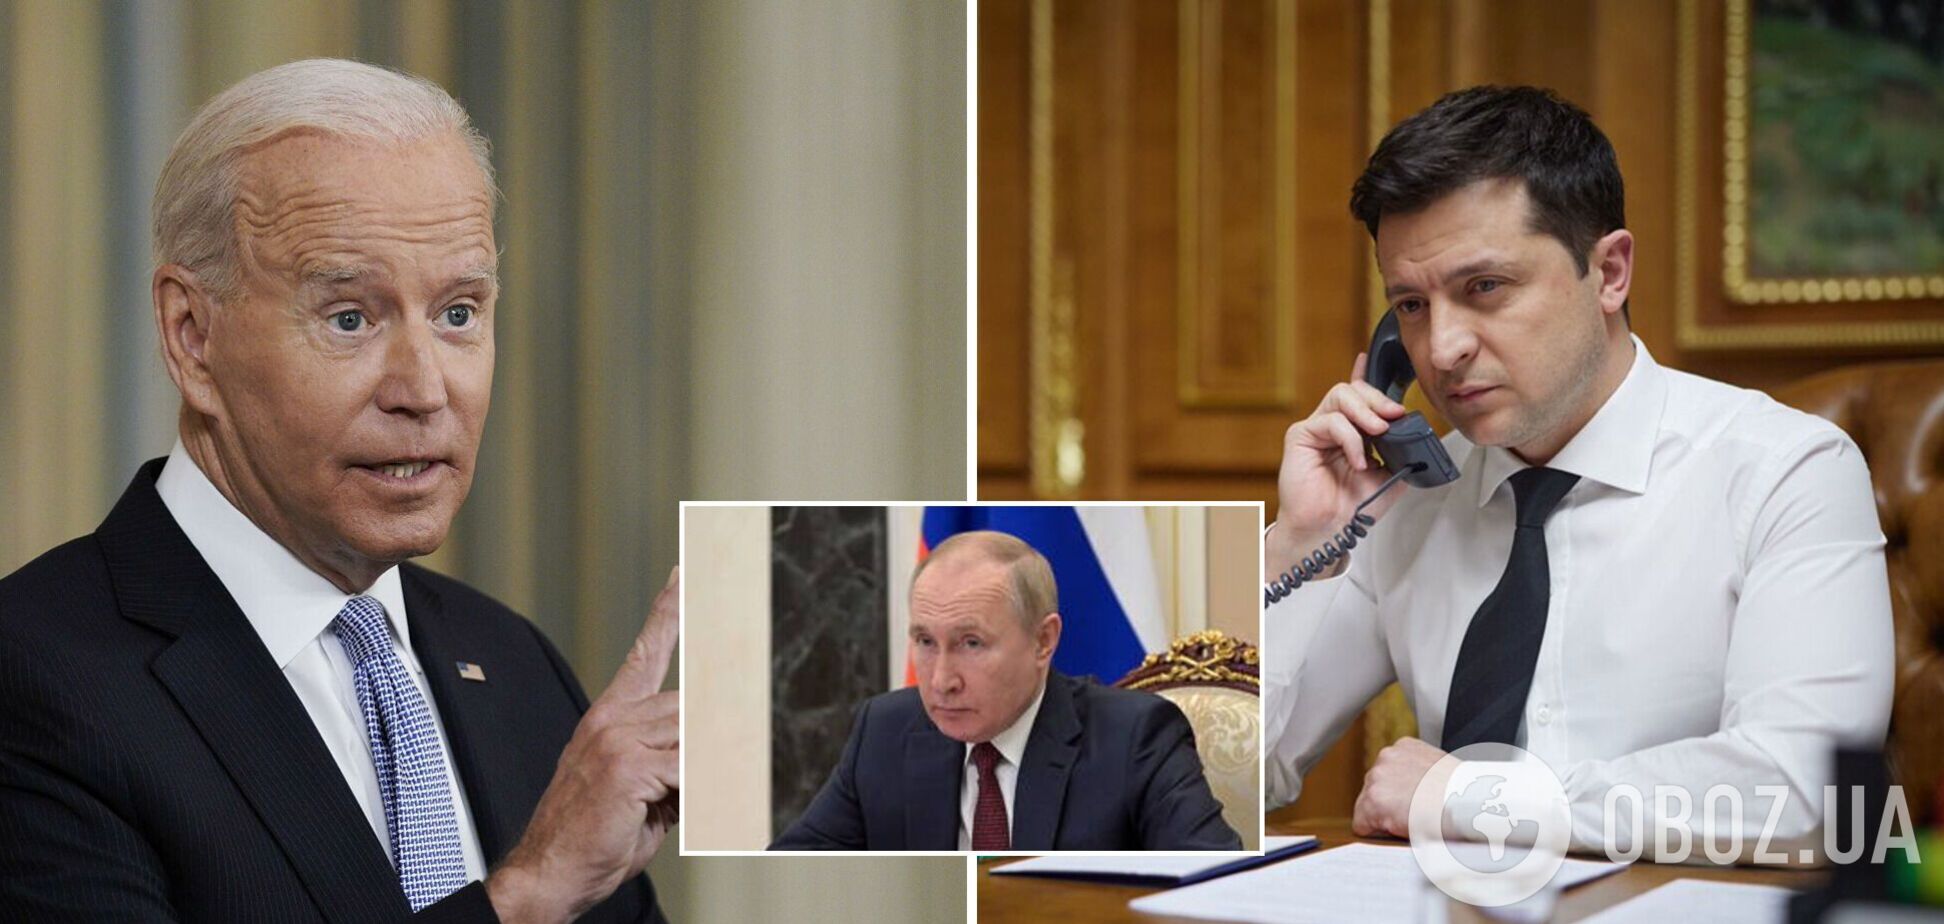 Зеленский предложил трехсторонние переговоры с Байденом и Путиным: в Белом доме отреагировали